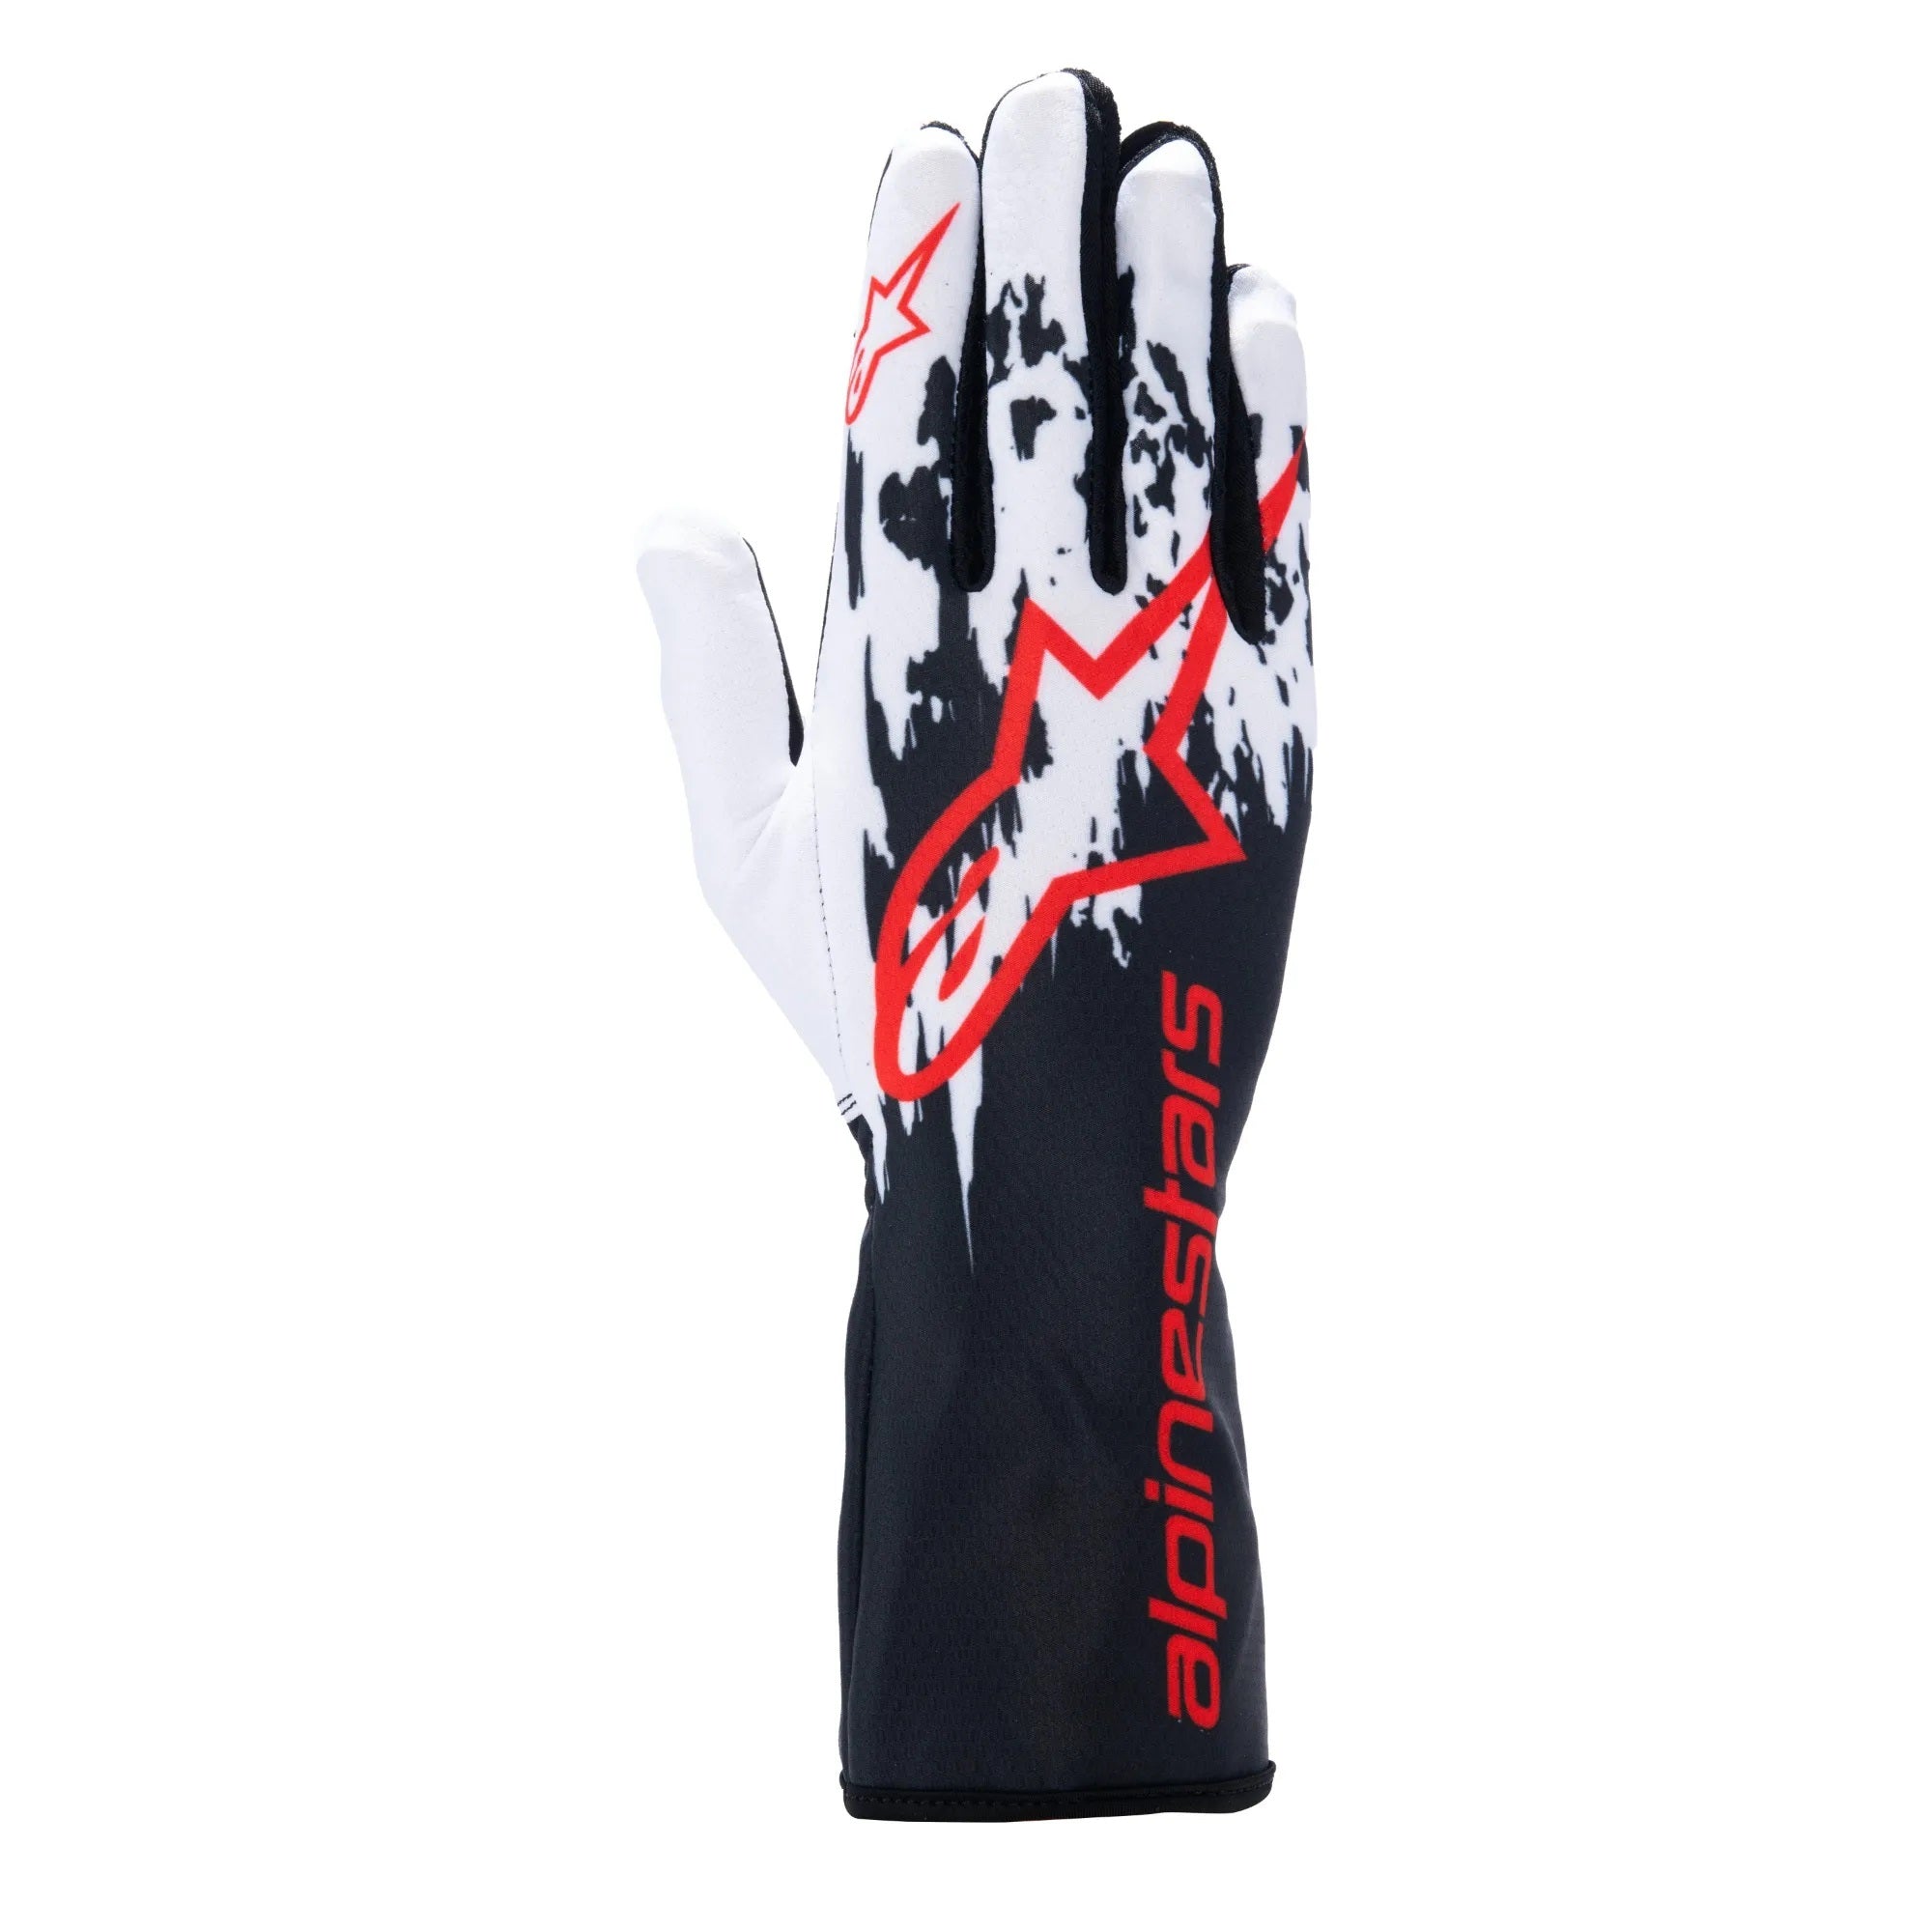 Alpinestars Tech-1 K v3 Gloves